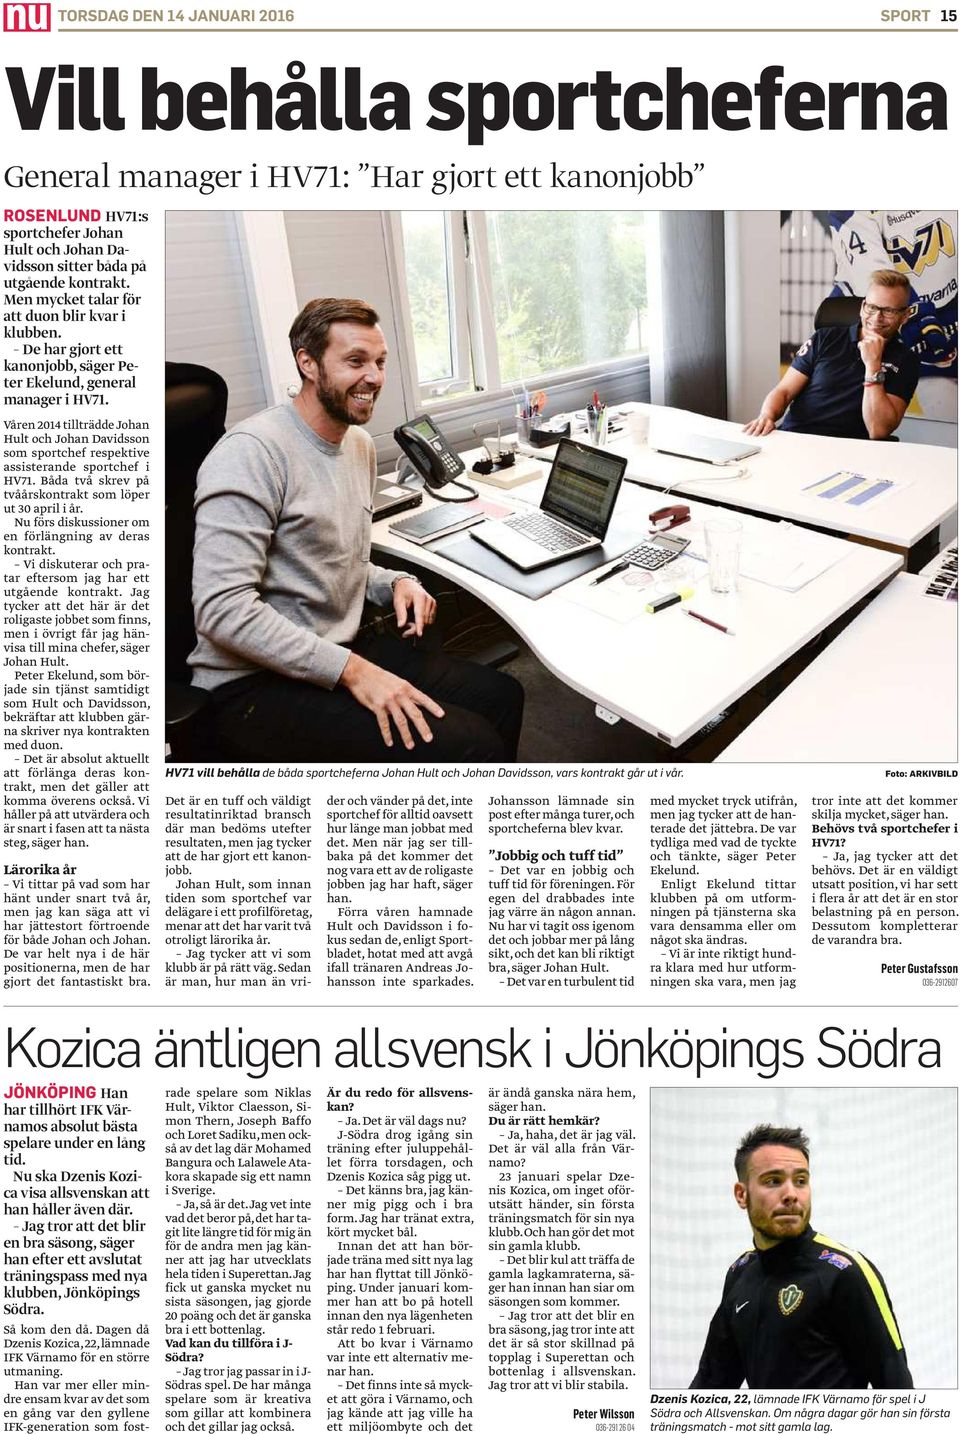 Våren 2014 tillträdde Johan Hult och Johan Davidsson som sportchef respektive assisterande sportchef i HV71. Båda två skrev på tvåårskontrakt som löper ut 30 april i år.